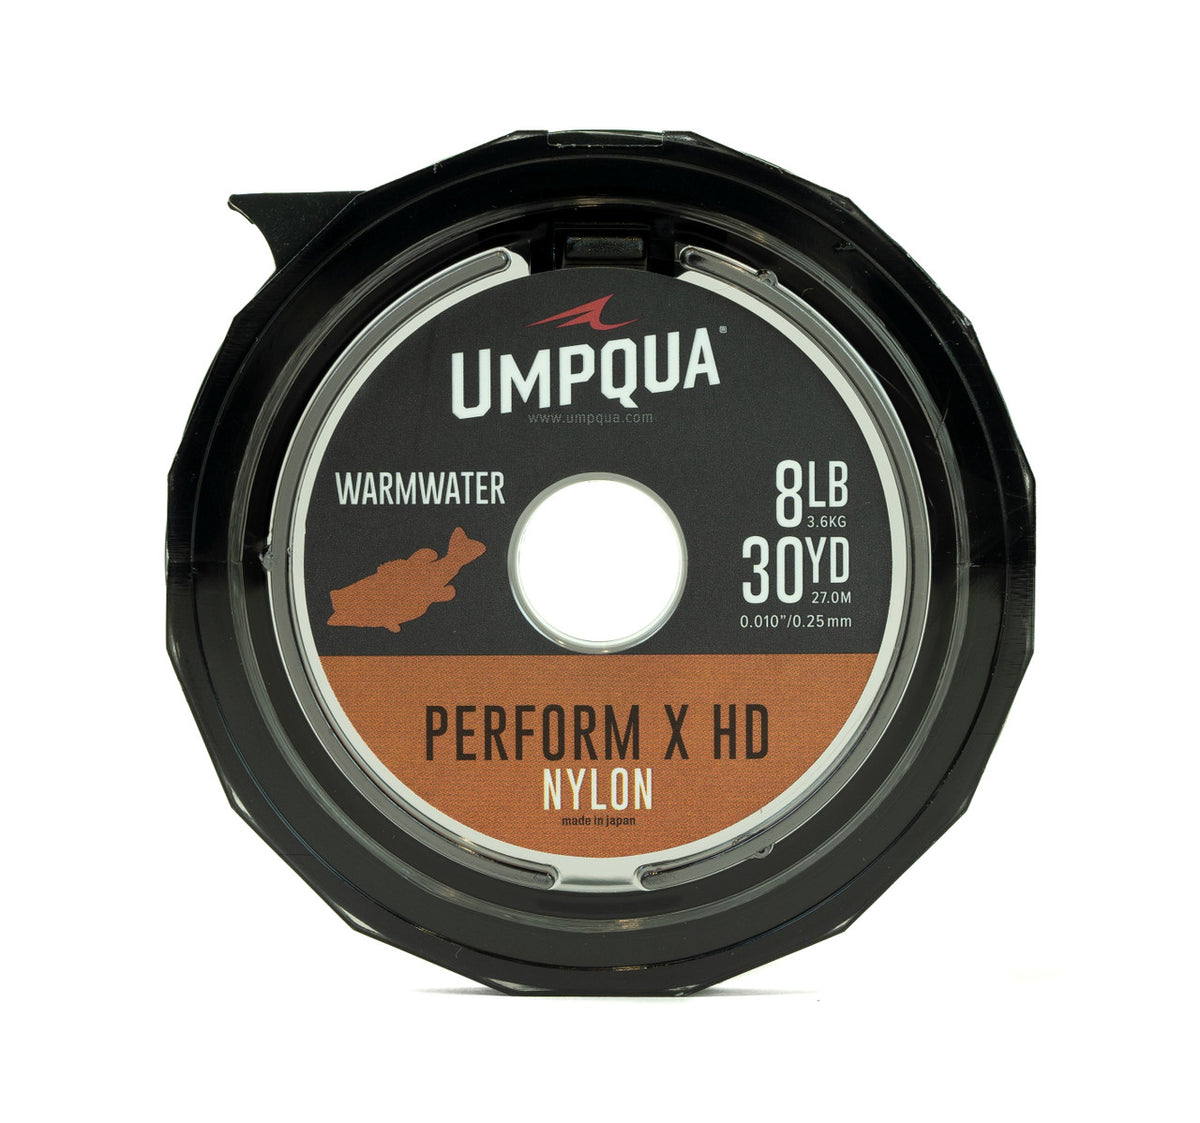 Umpqua Perform X HD Warm water Tippet